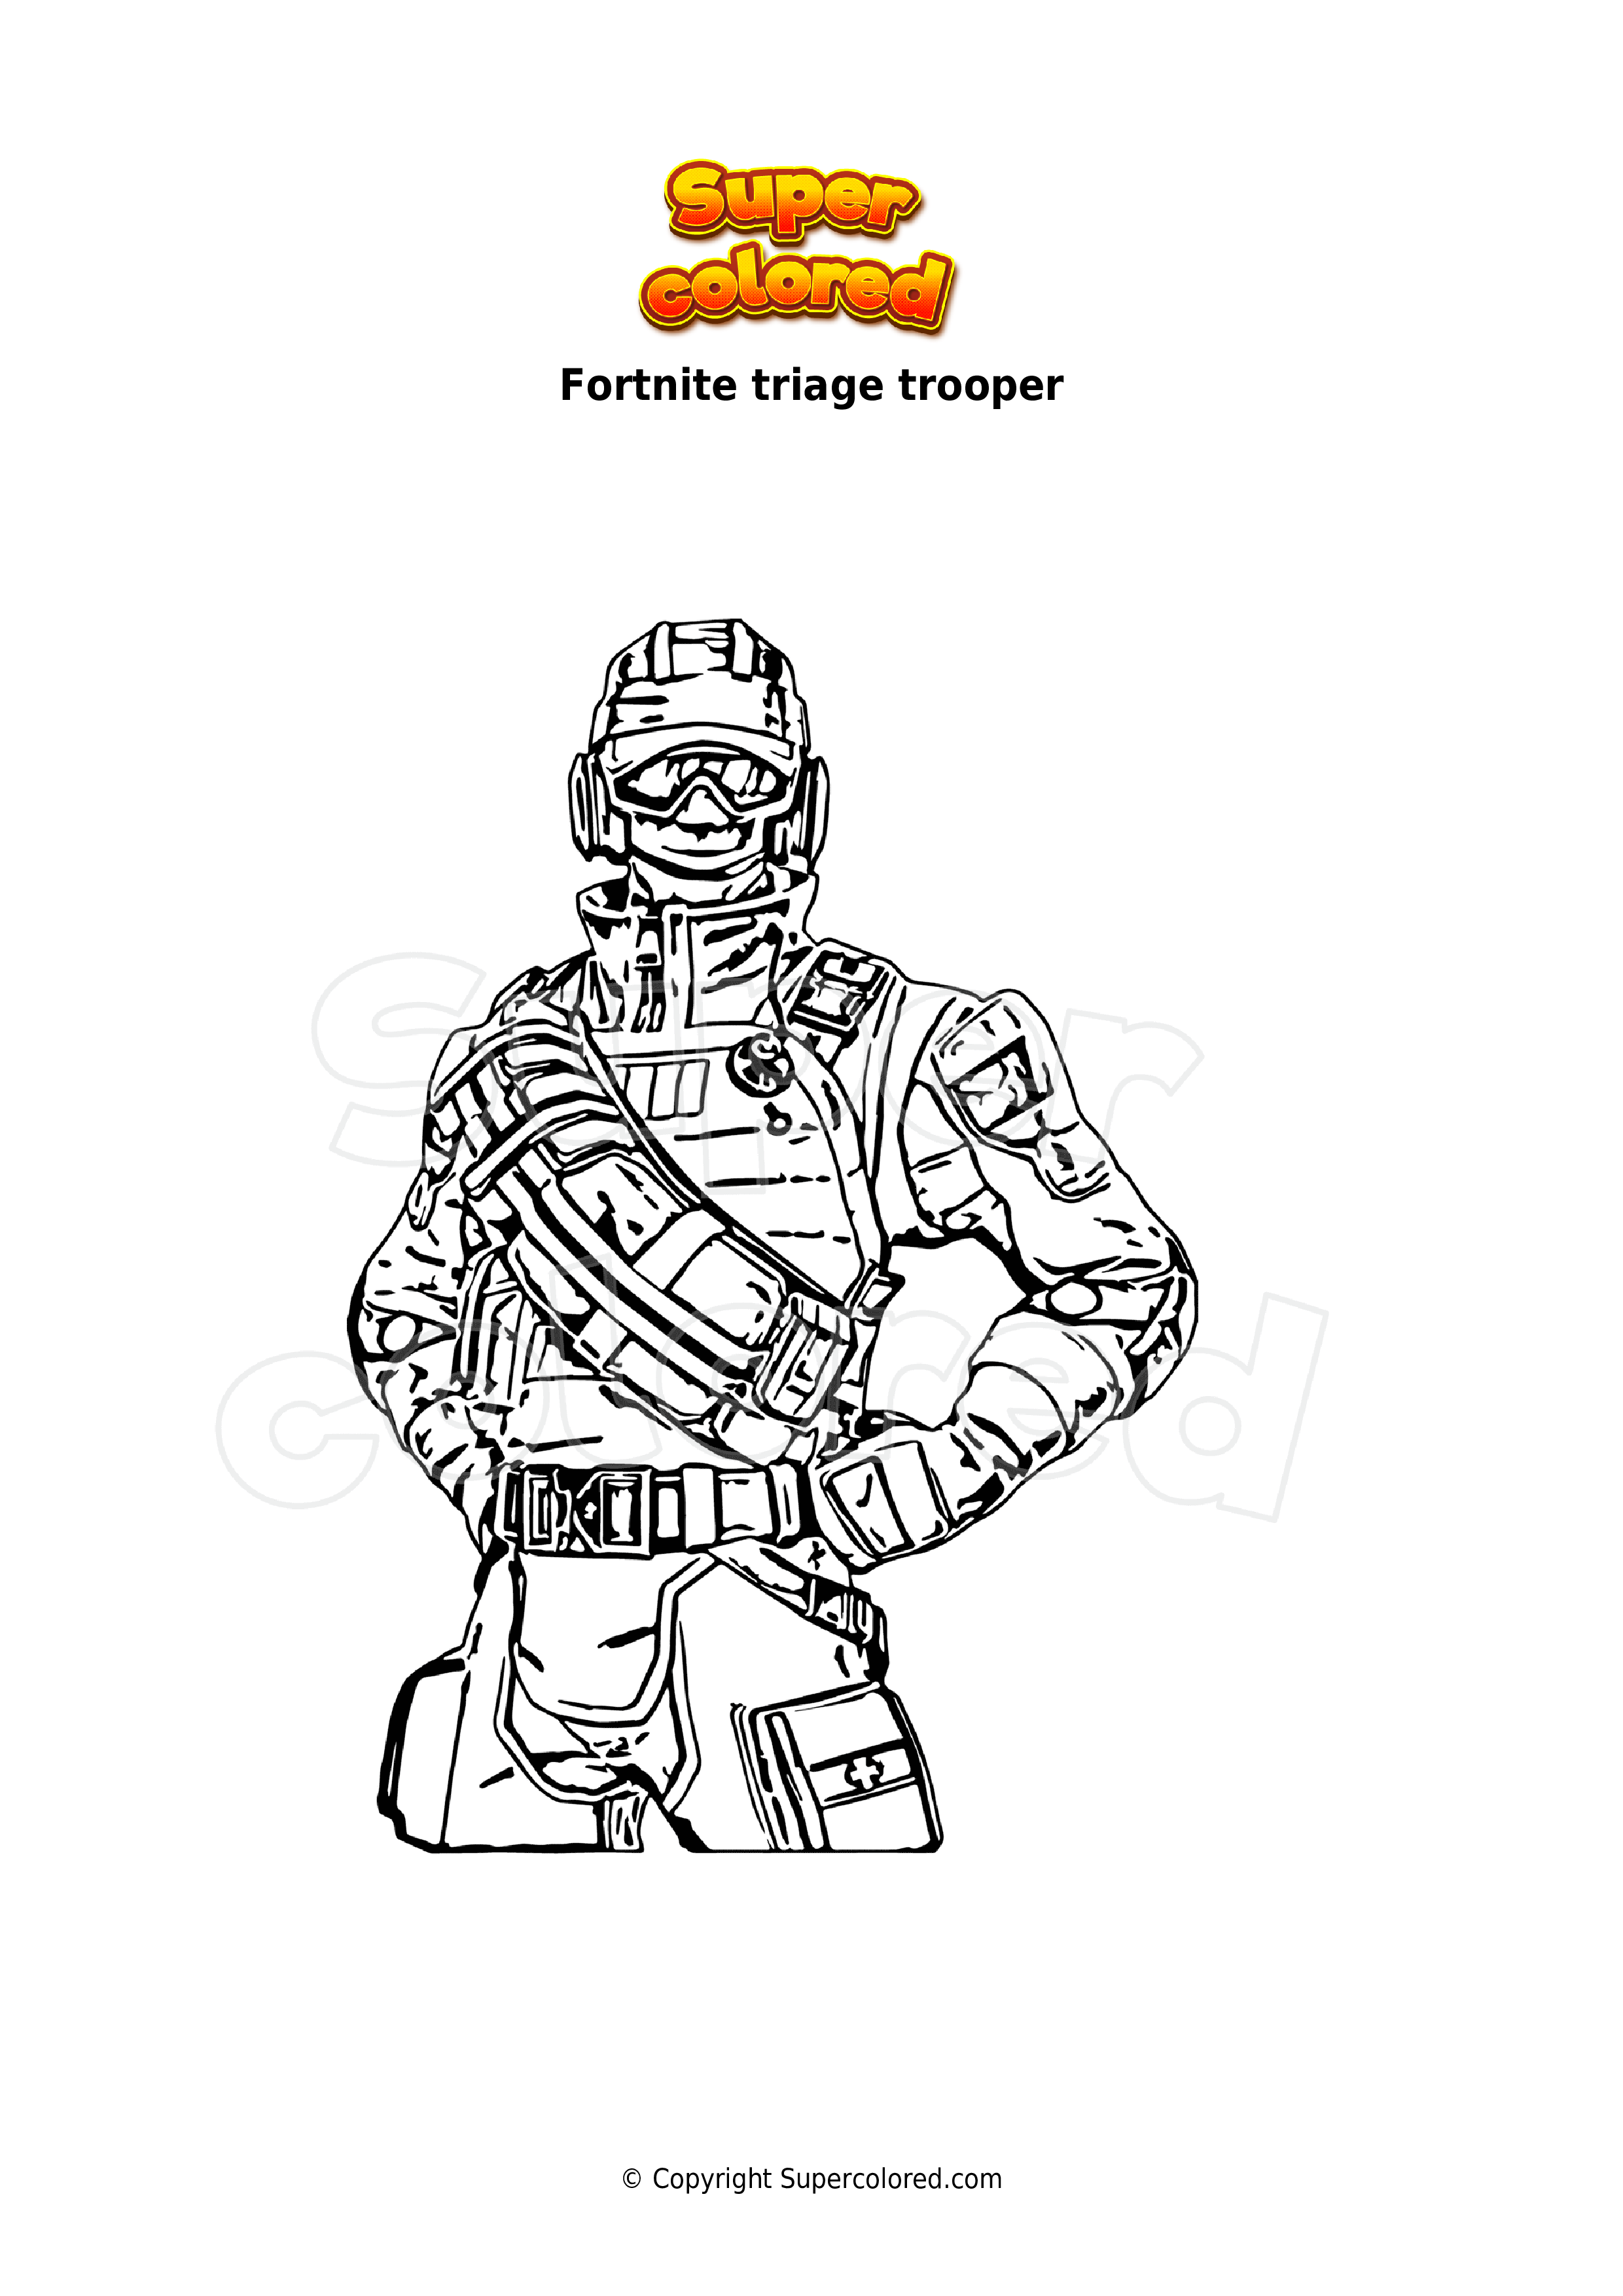 Ausmalbild Fortnite triage trooper - Supercolored.com